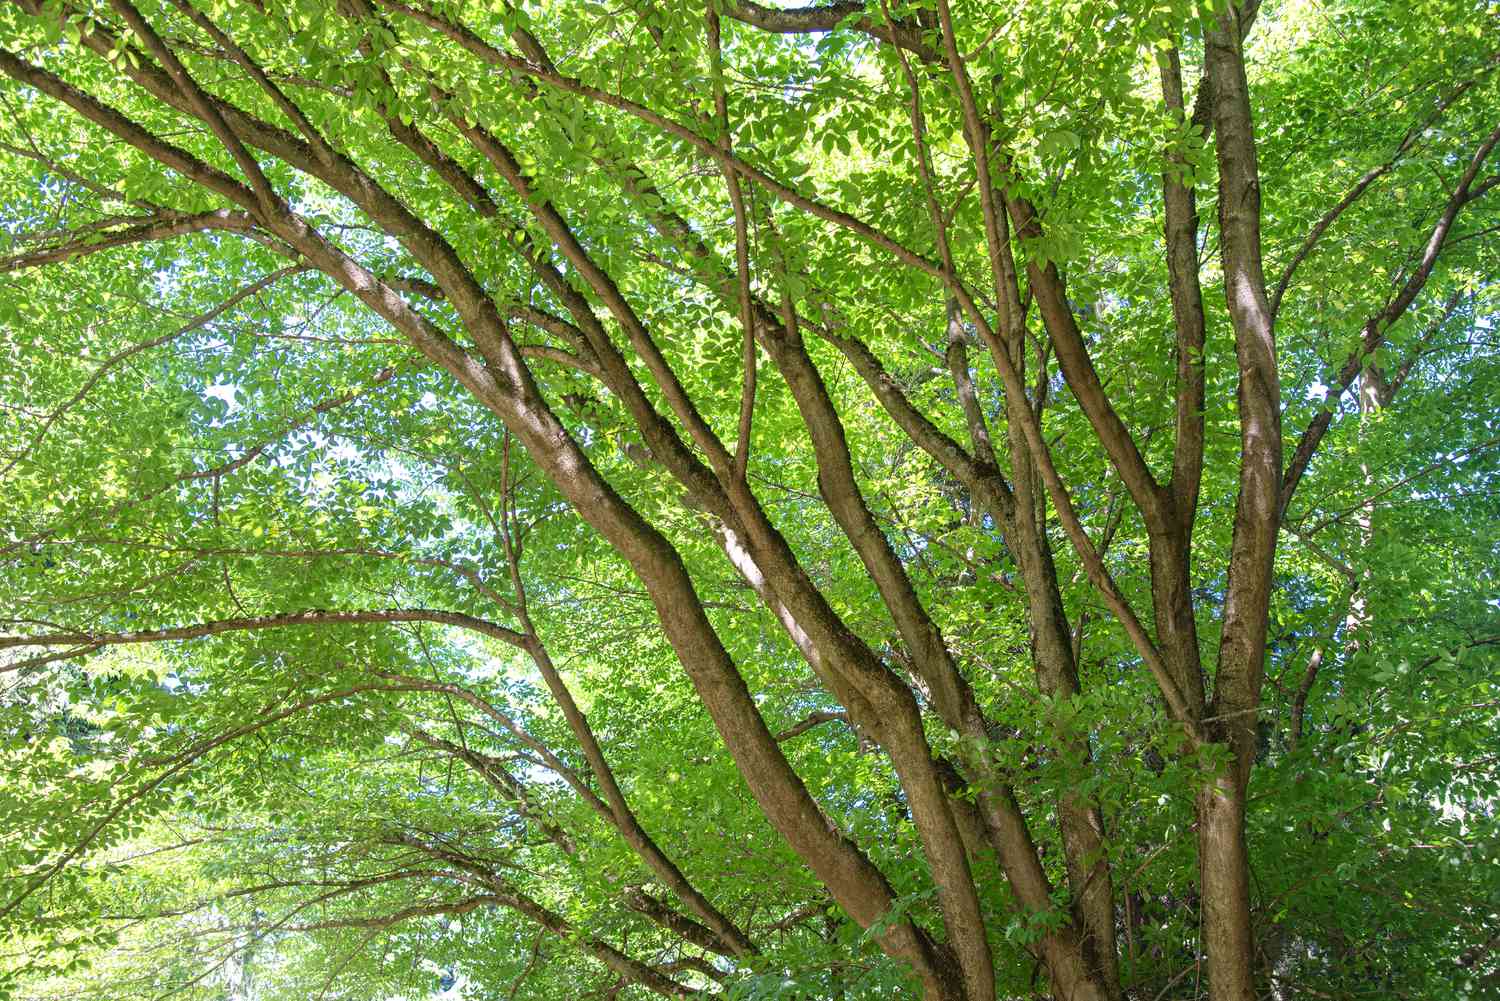 Troncs d'érable à feuilles de vigne s'étalant en branches étendues avec des feuilles vertes brillantes